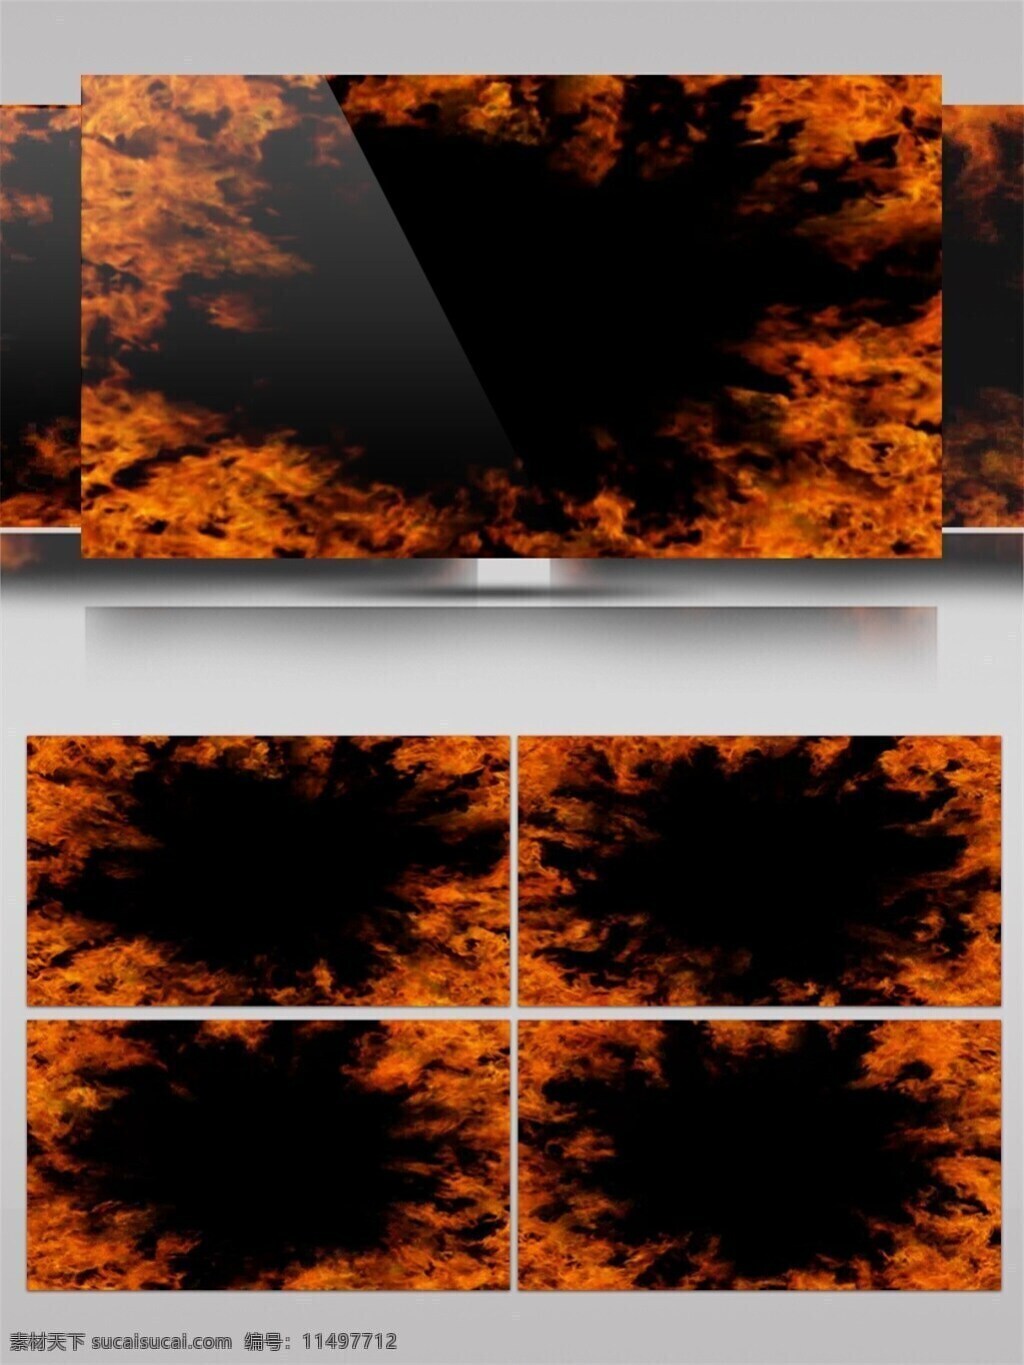 宇宙 火焰 边框 视频 3d视频素材 光束 激光 酒吧舞台 特效视频素材